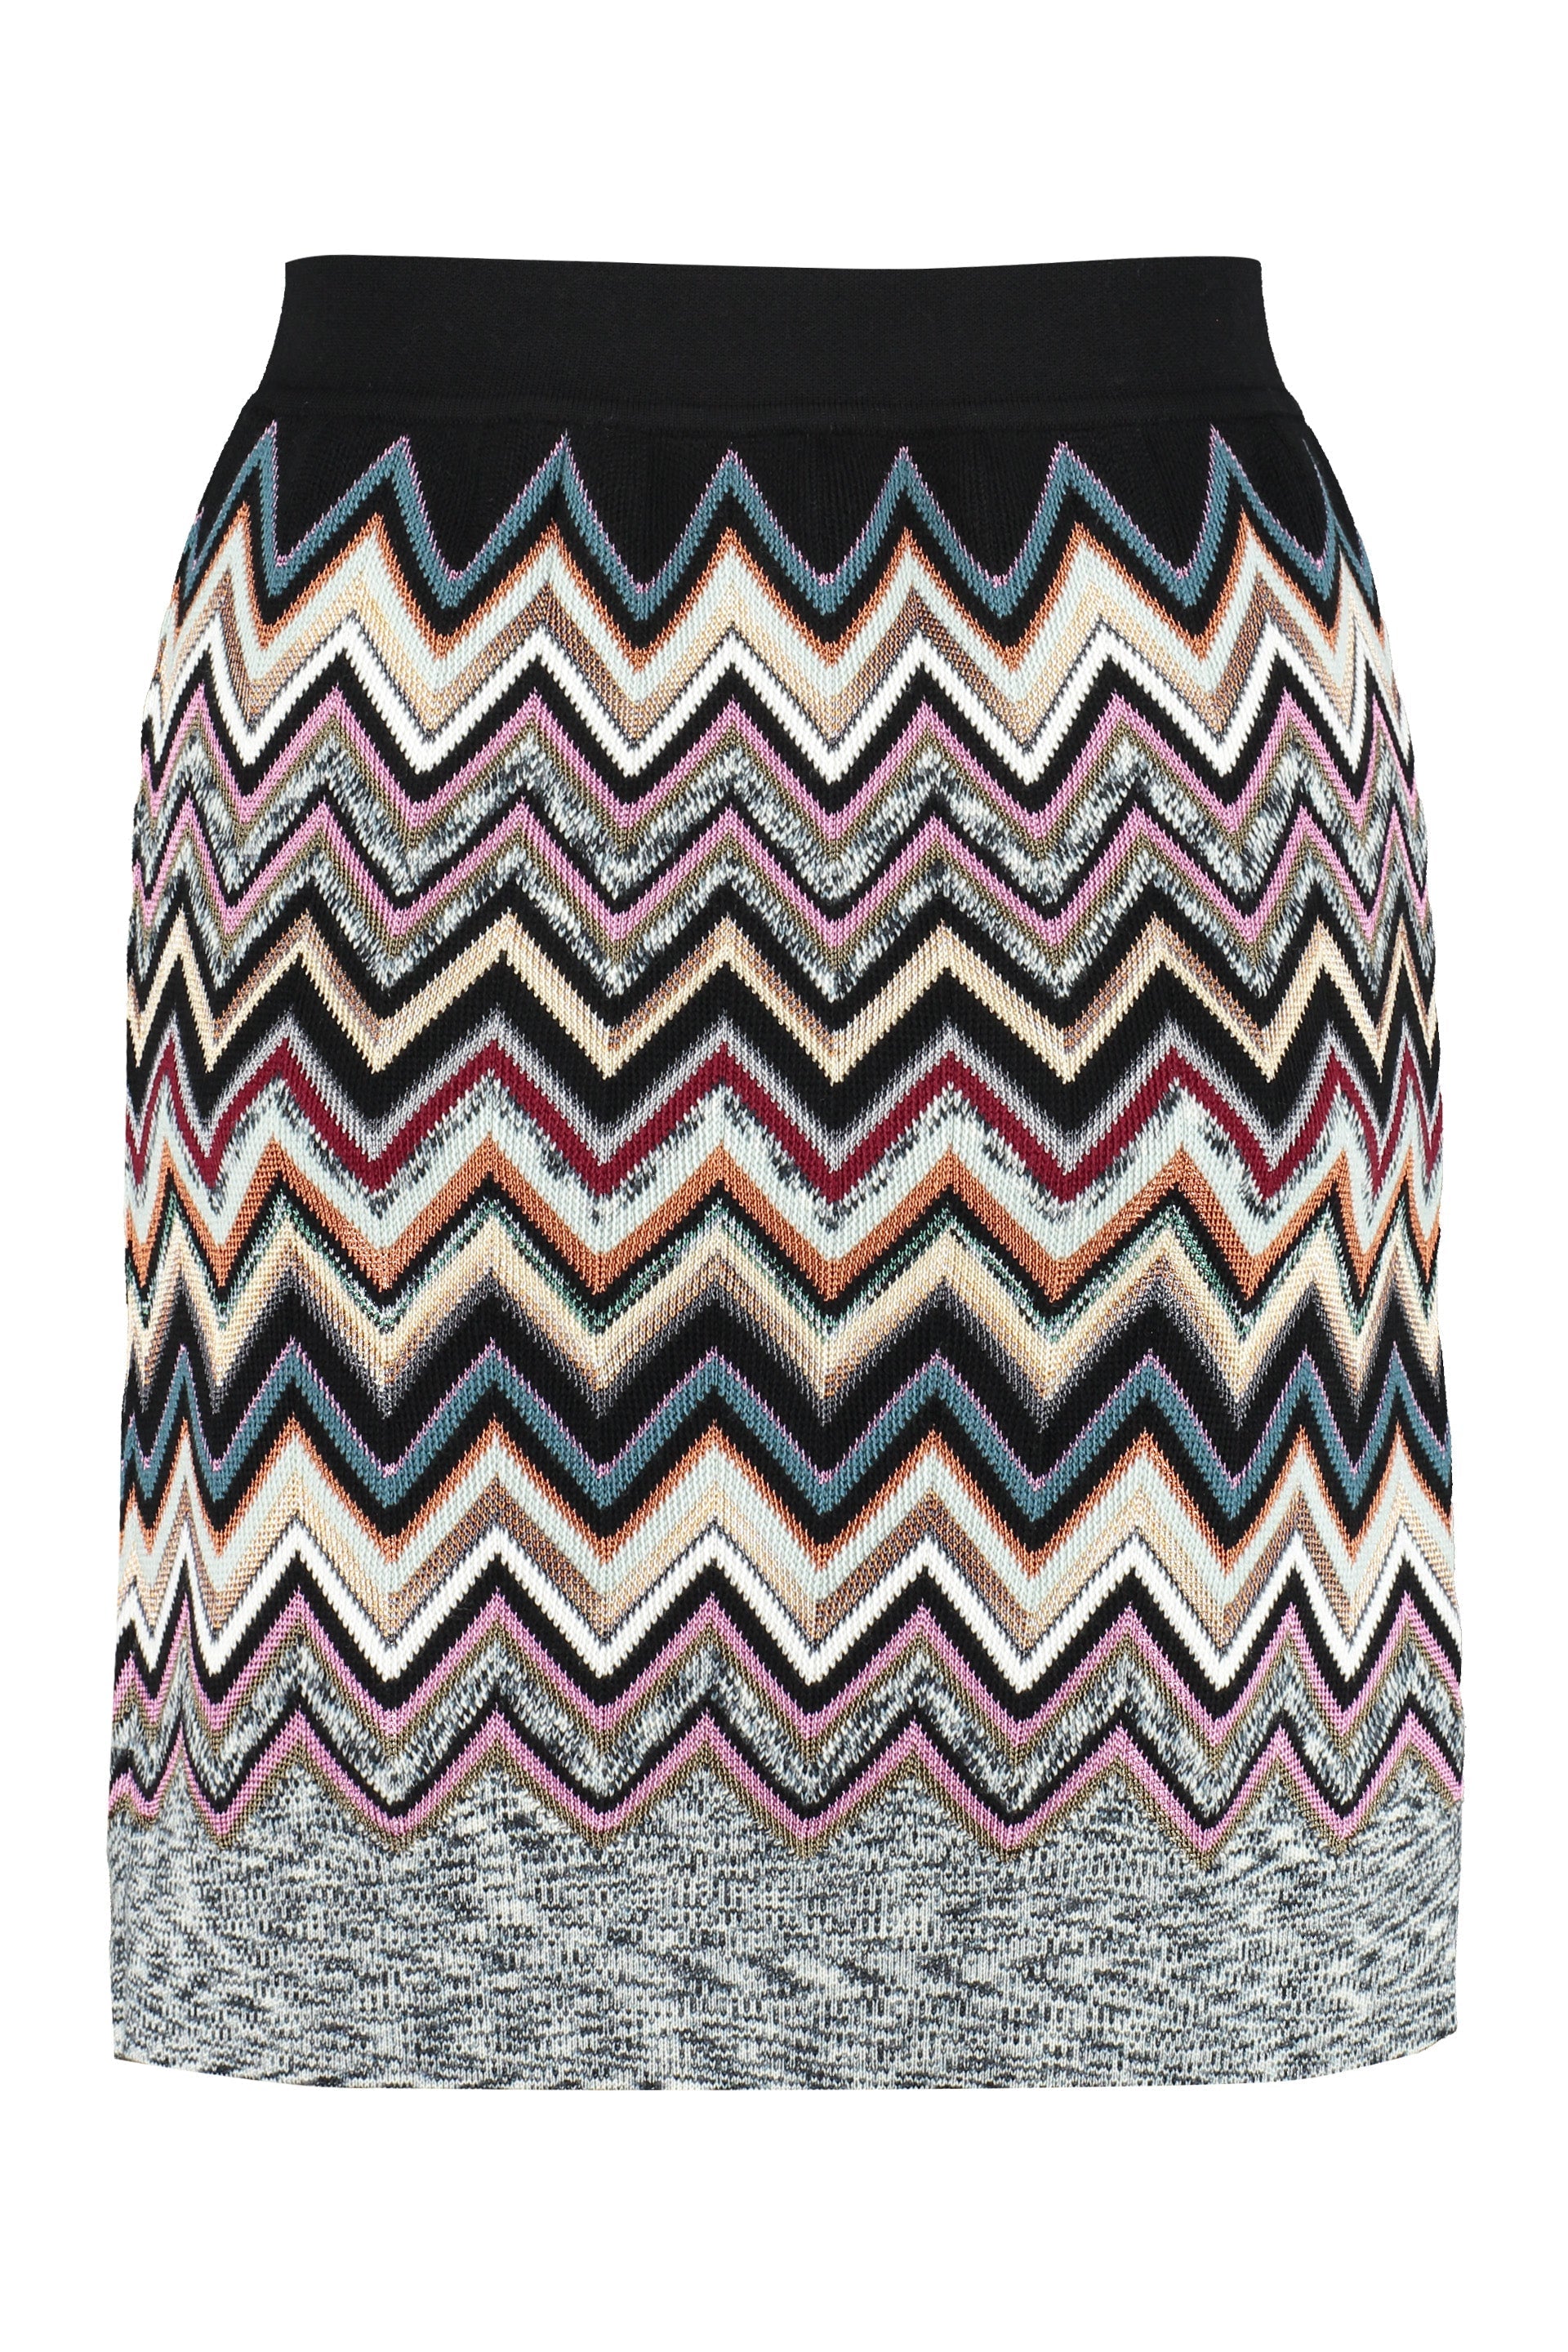 Chevron knit miniskirt-Missoni-OUTLET-SALE-40-ARCHIVIST